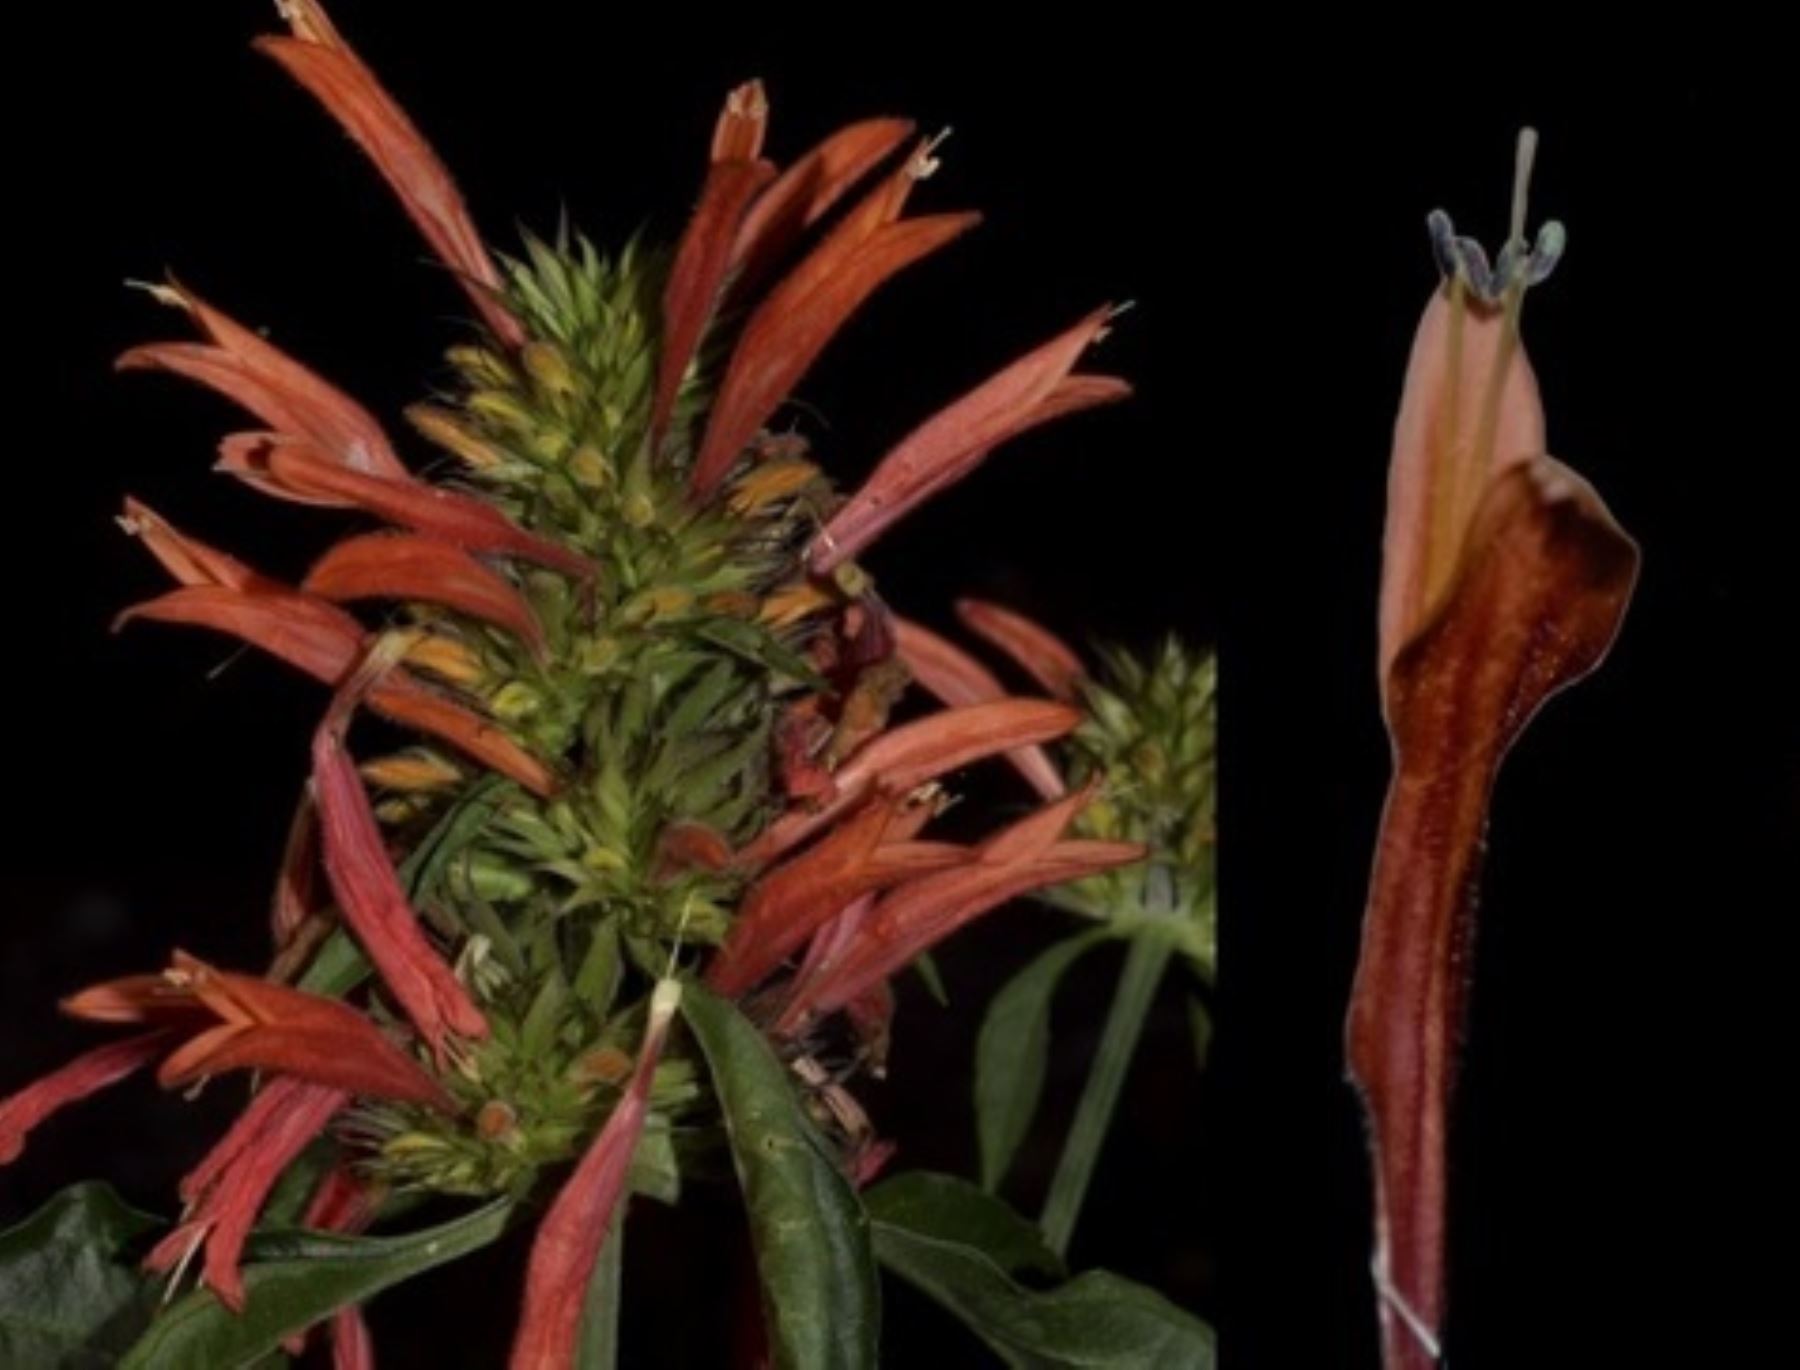 Descubren una nueva especie de planta en bosque de protección ubicado en las regiones Junín y Pasco, informó el Sernanp. ANDINA/Difusión